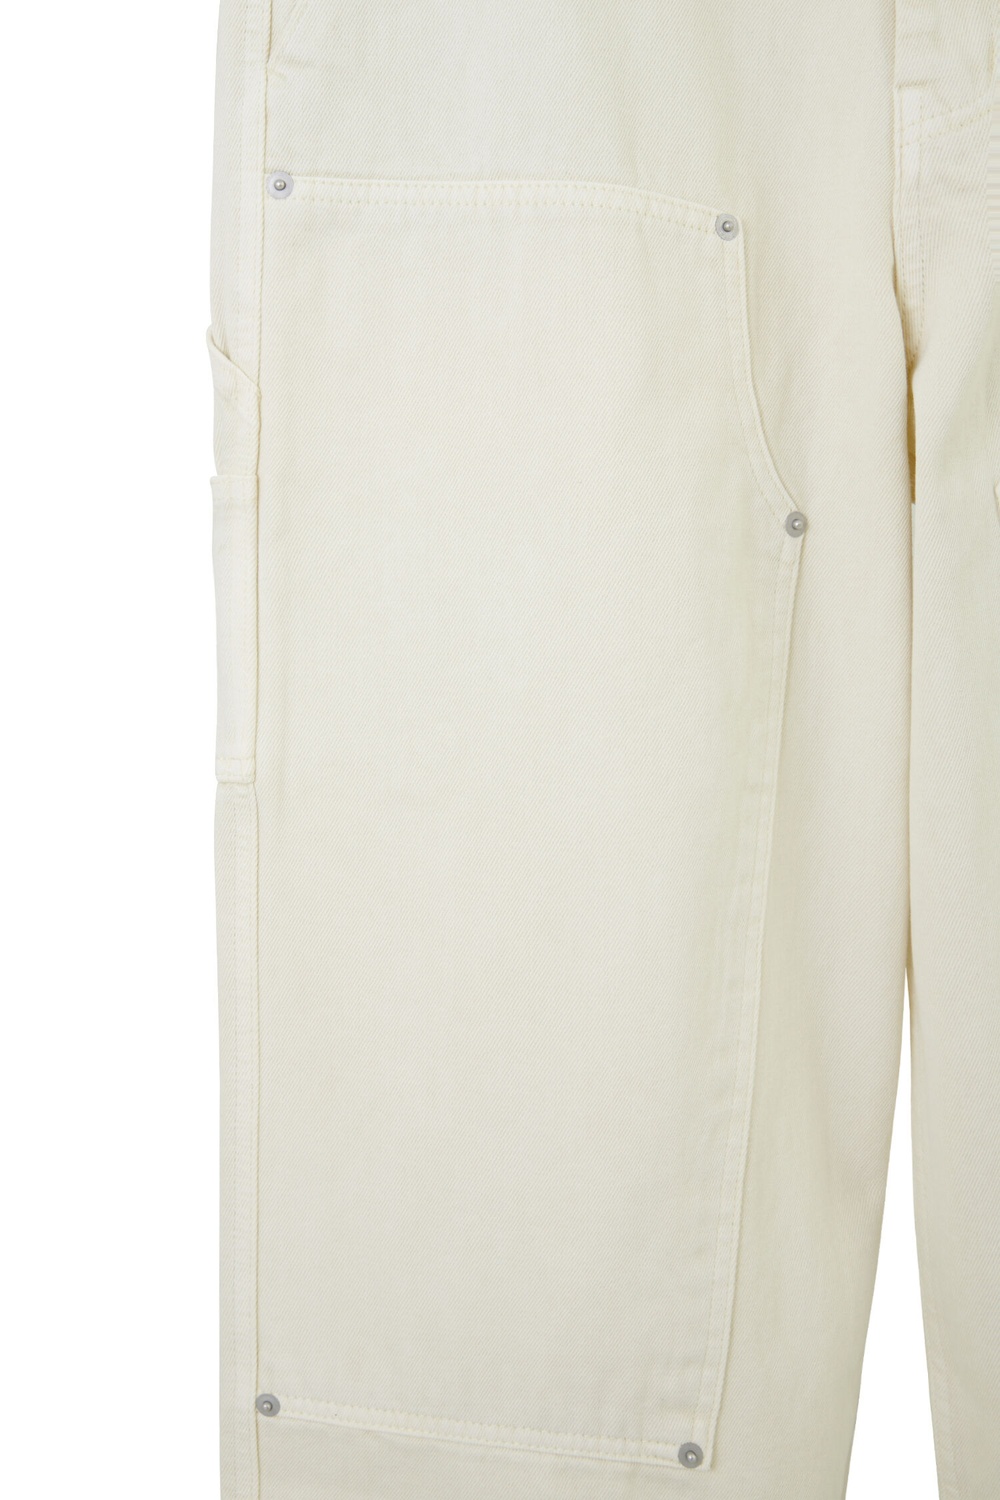 LV Louis Vuitton Monogram Workwear Denim Carpenter Pants Off-White